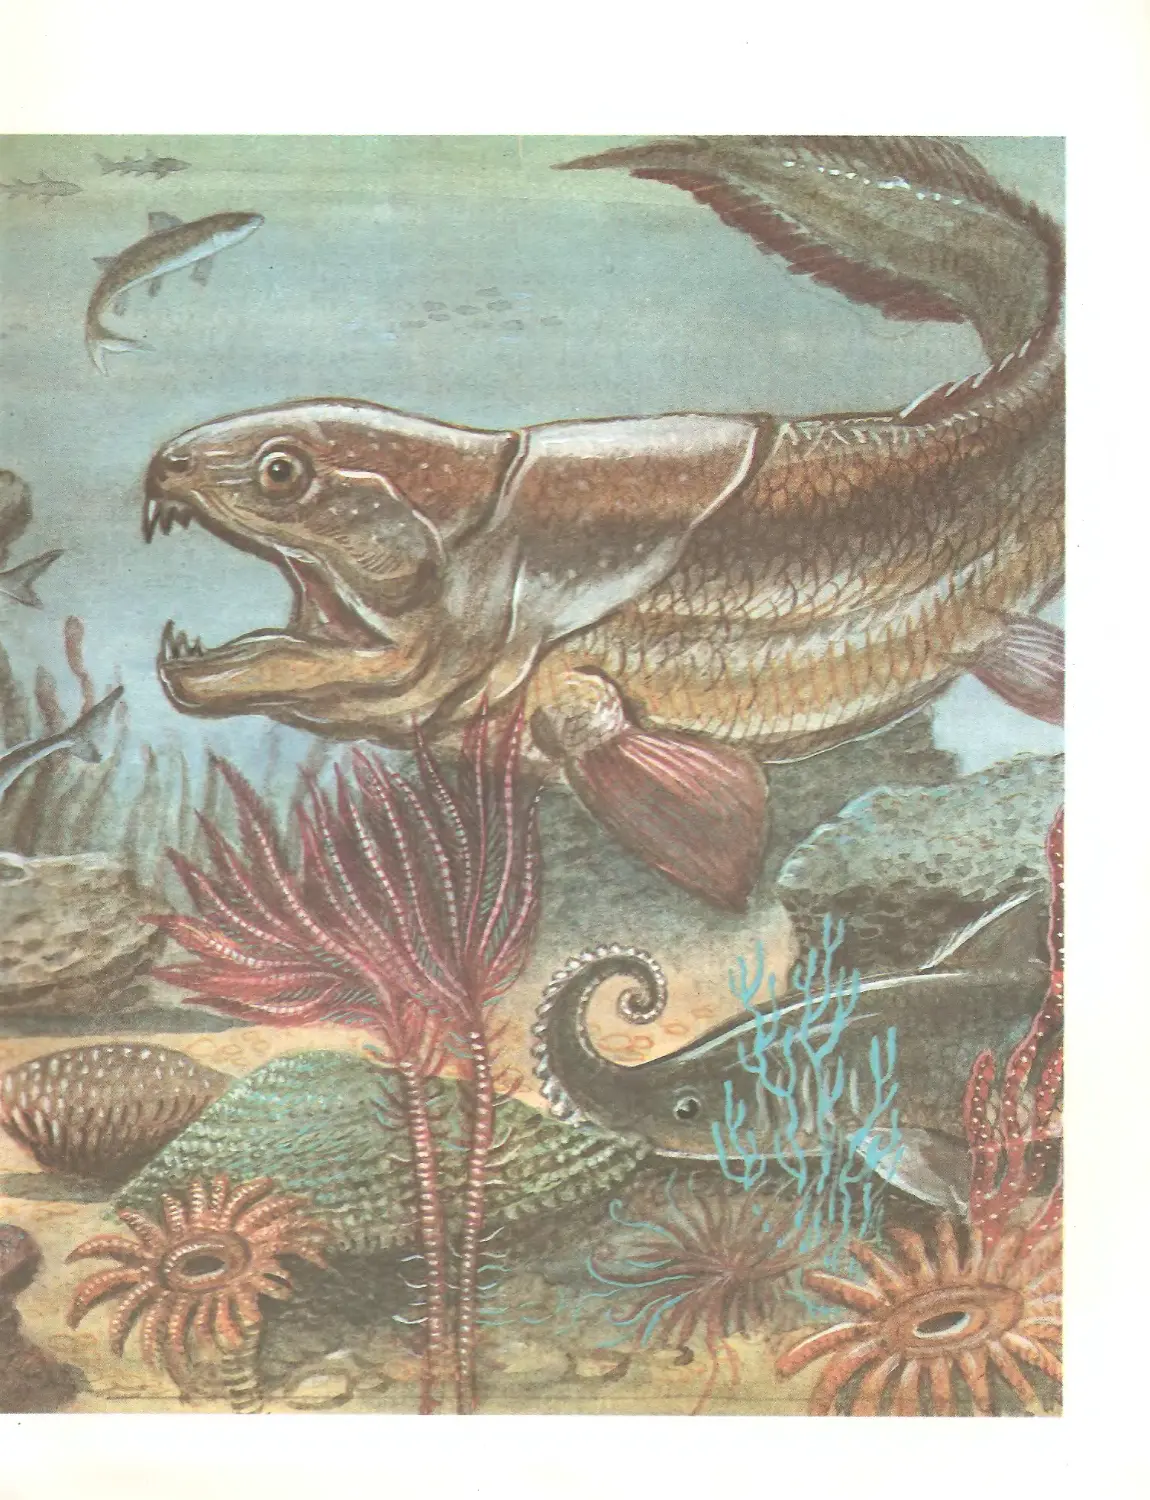 Когда появились первые позвоночные животные. Палеозойская Эра Девонский период рыбы. Девонский период палеозойской эры. Костистые рыбы Палеозойская Эра. Палеозой Девон.